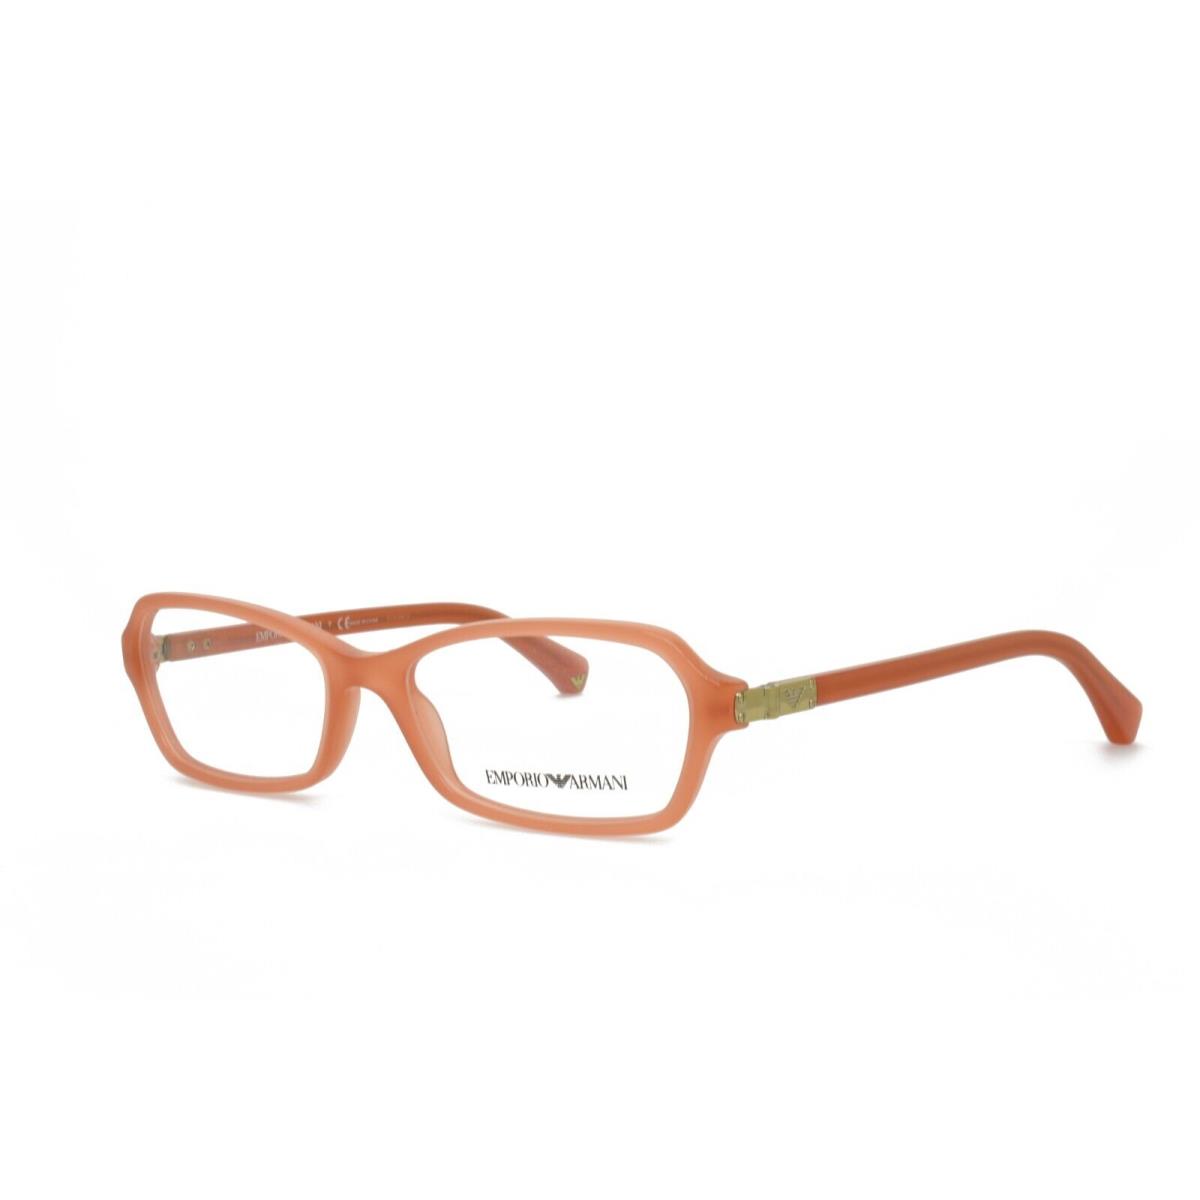 Emporio Armani 3009 5083 52-16-135 Orange Eyeglasses Frames